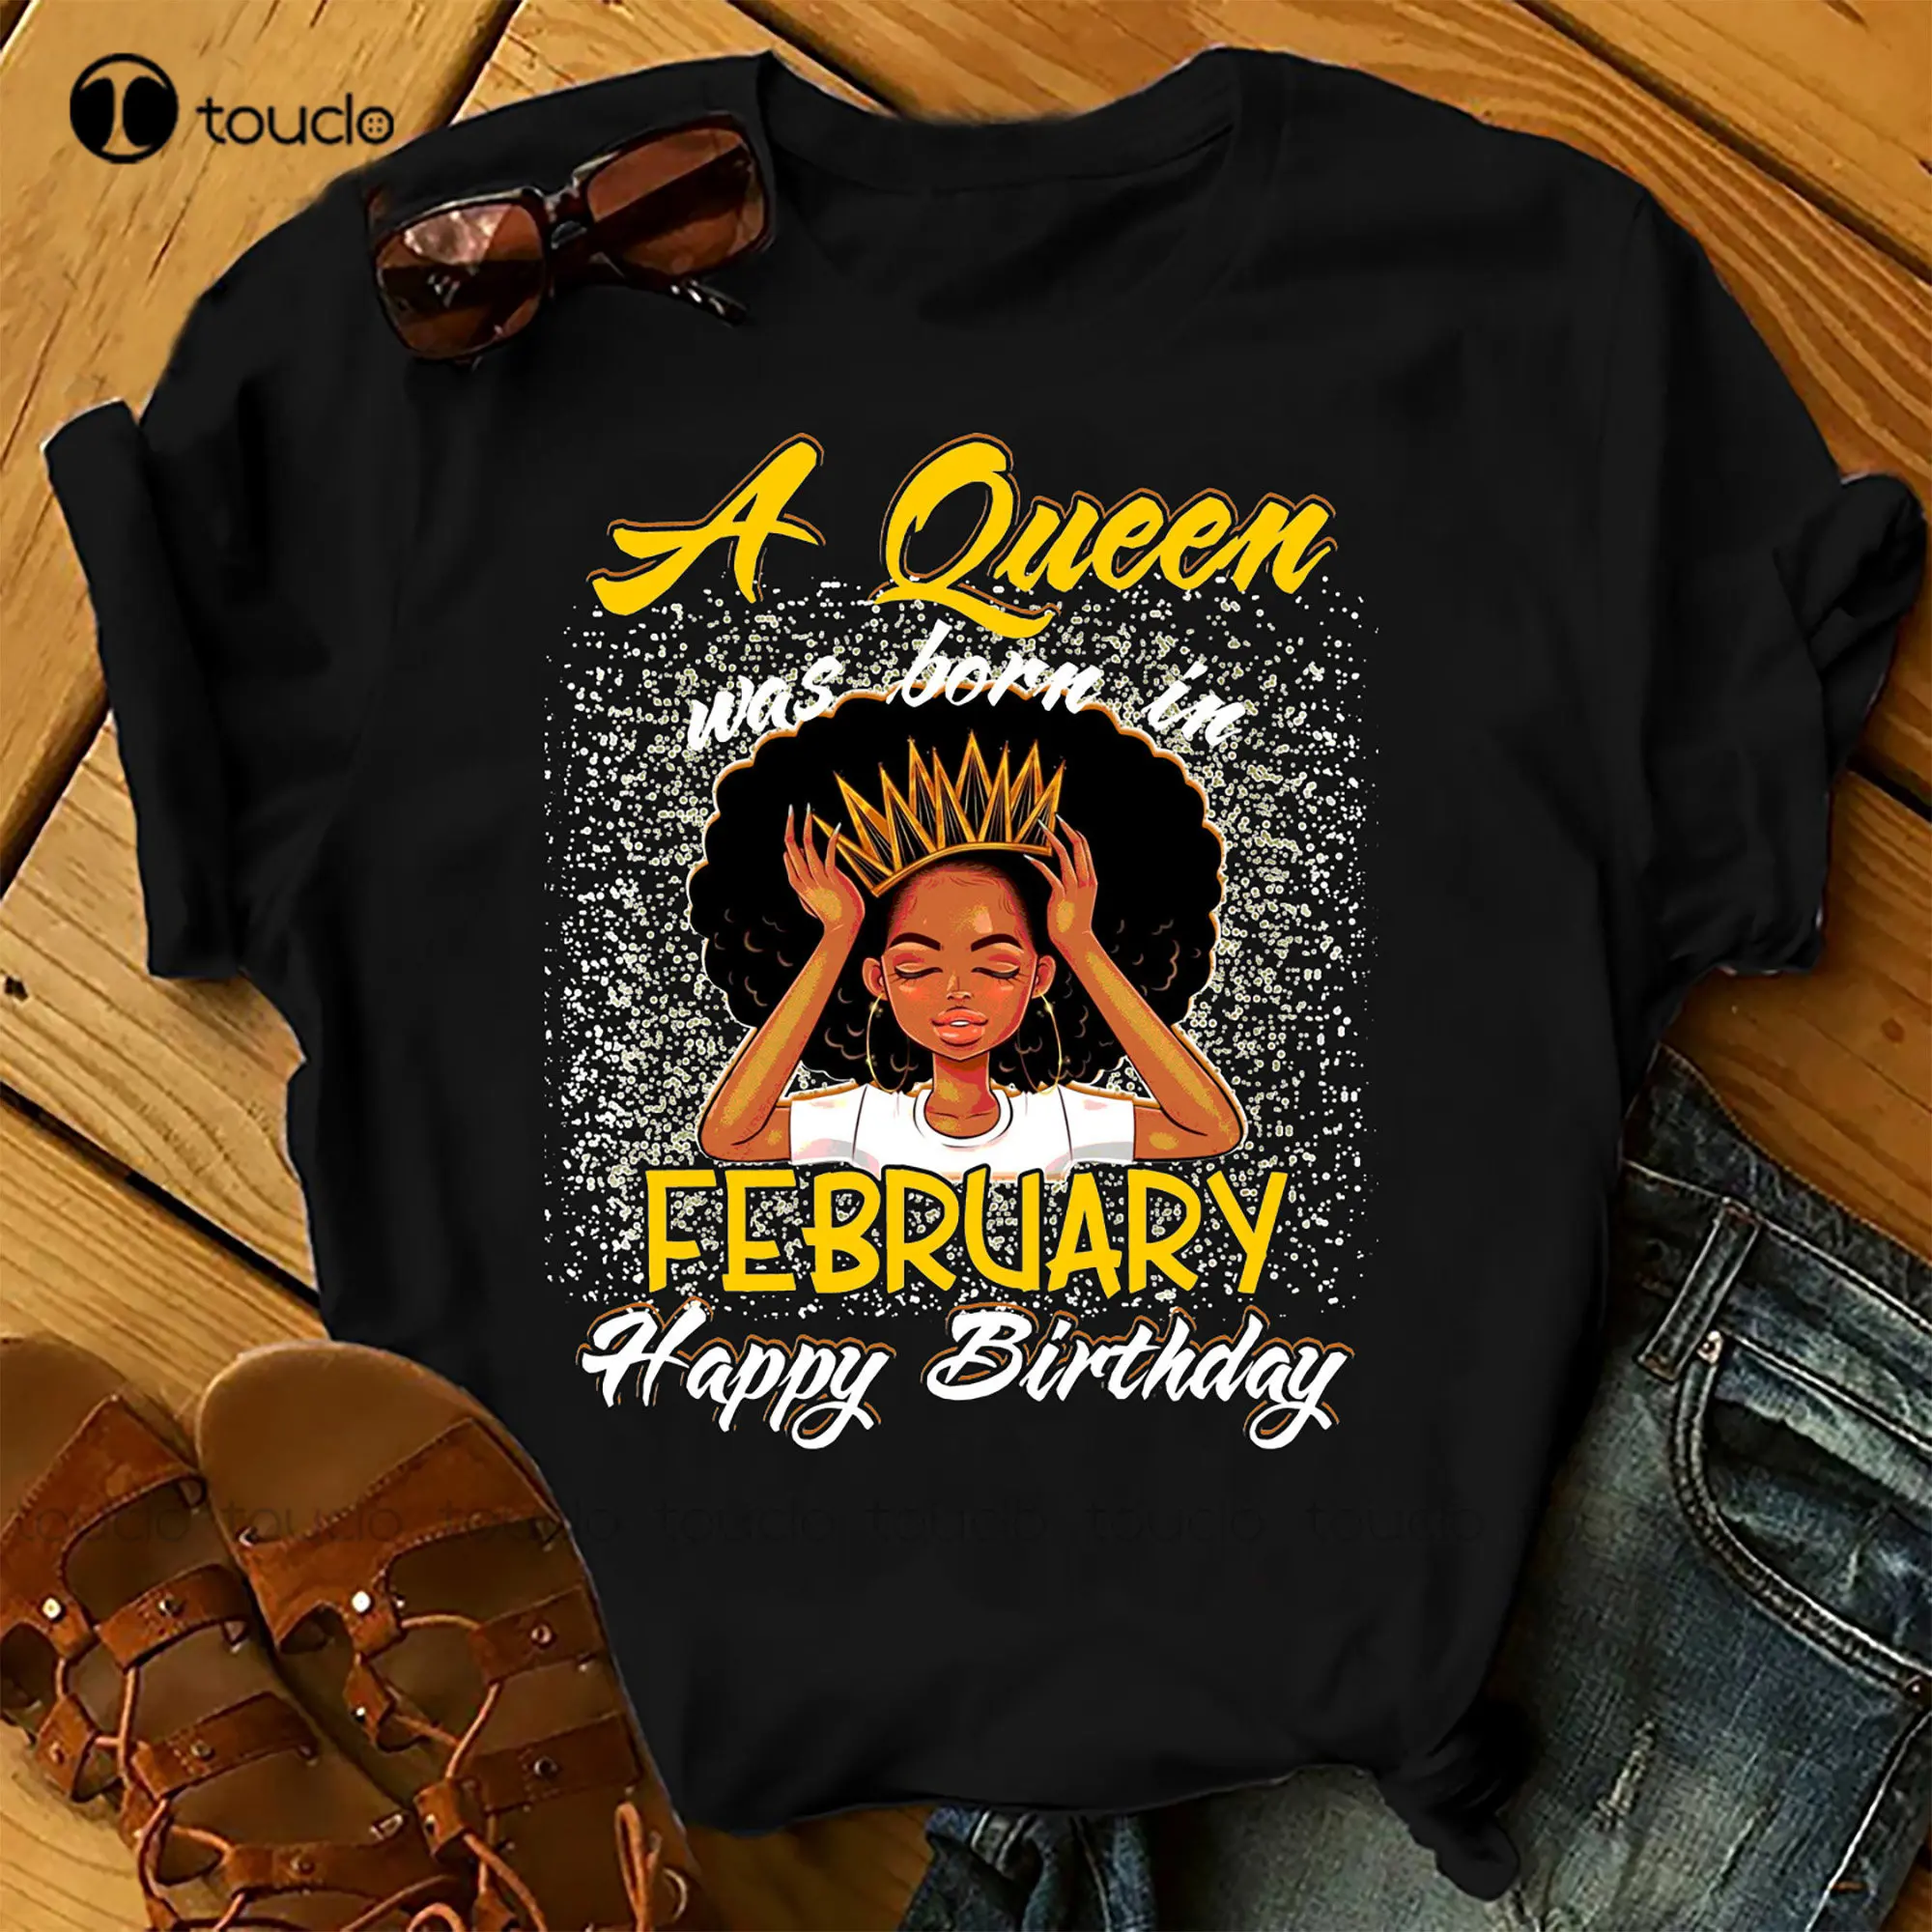 

Женская футболка на день рождения с изображением королевы была родилась в феврале, летние топы, пляжные футболки, рубашки с изображением фильма ужасов, индивидуальный подарок